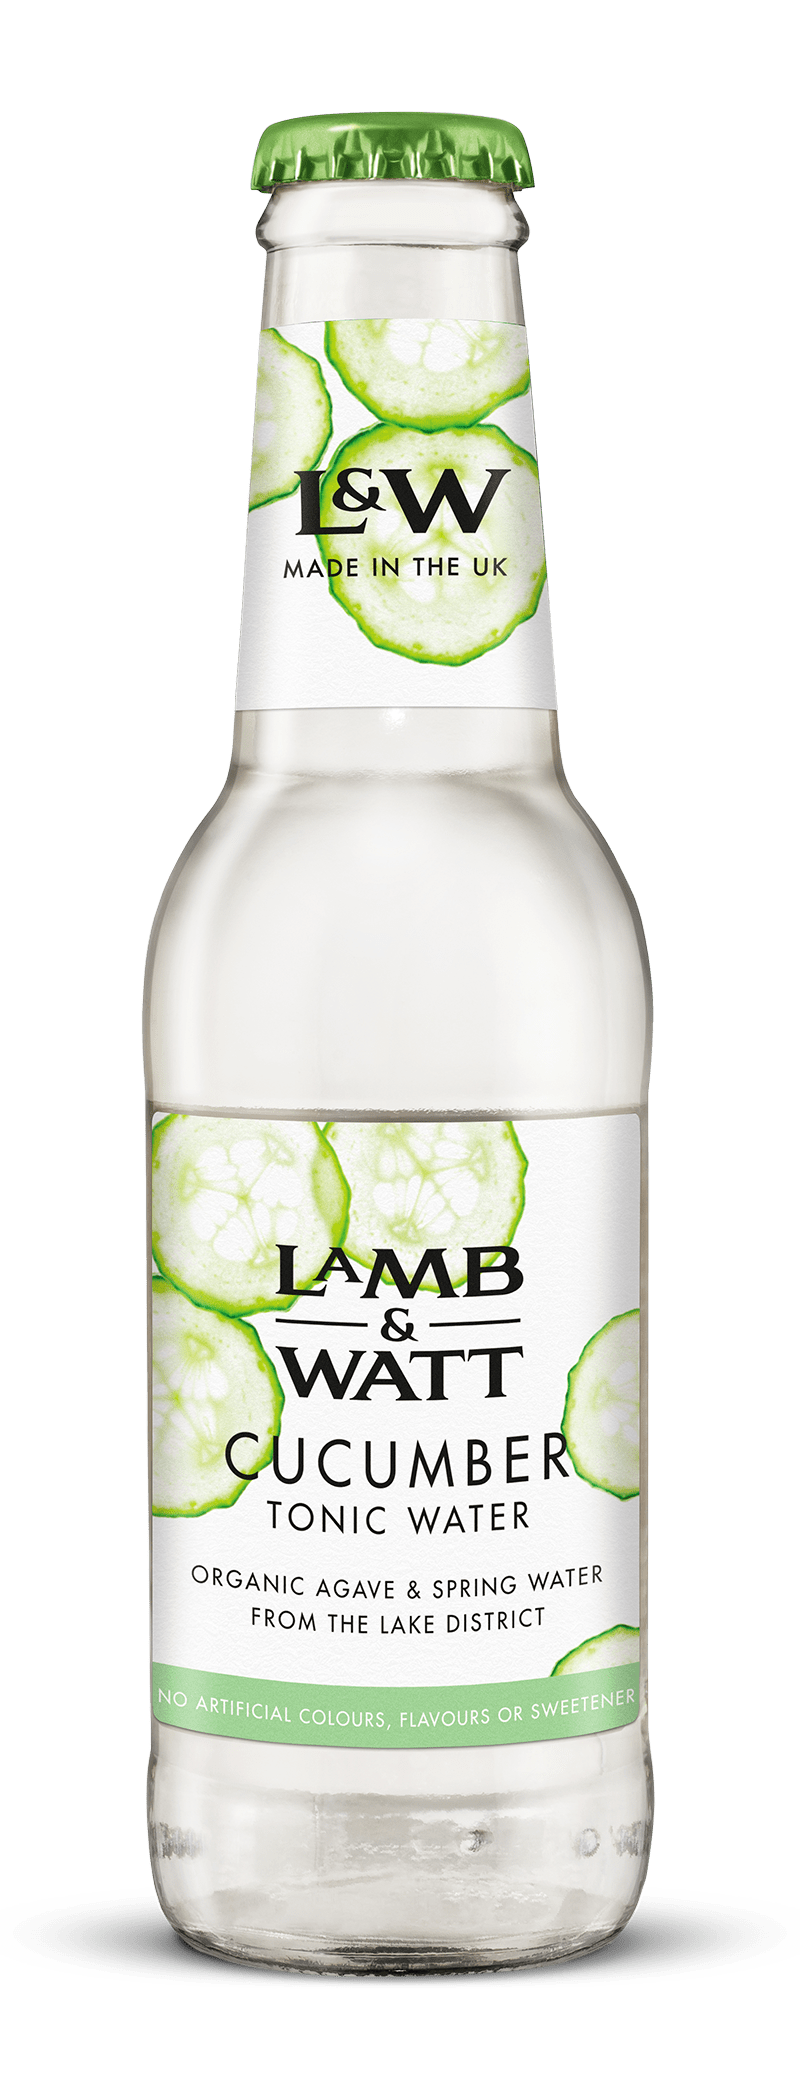 Lamb & Watt Cucumber Tonic Water